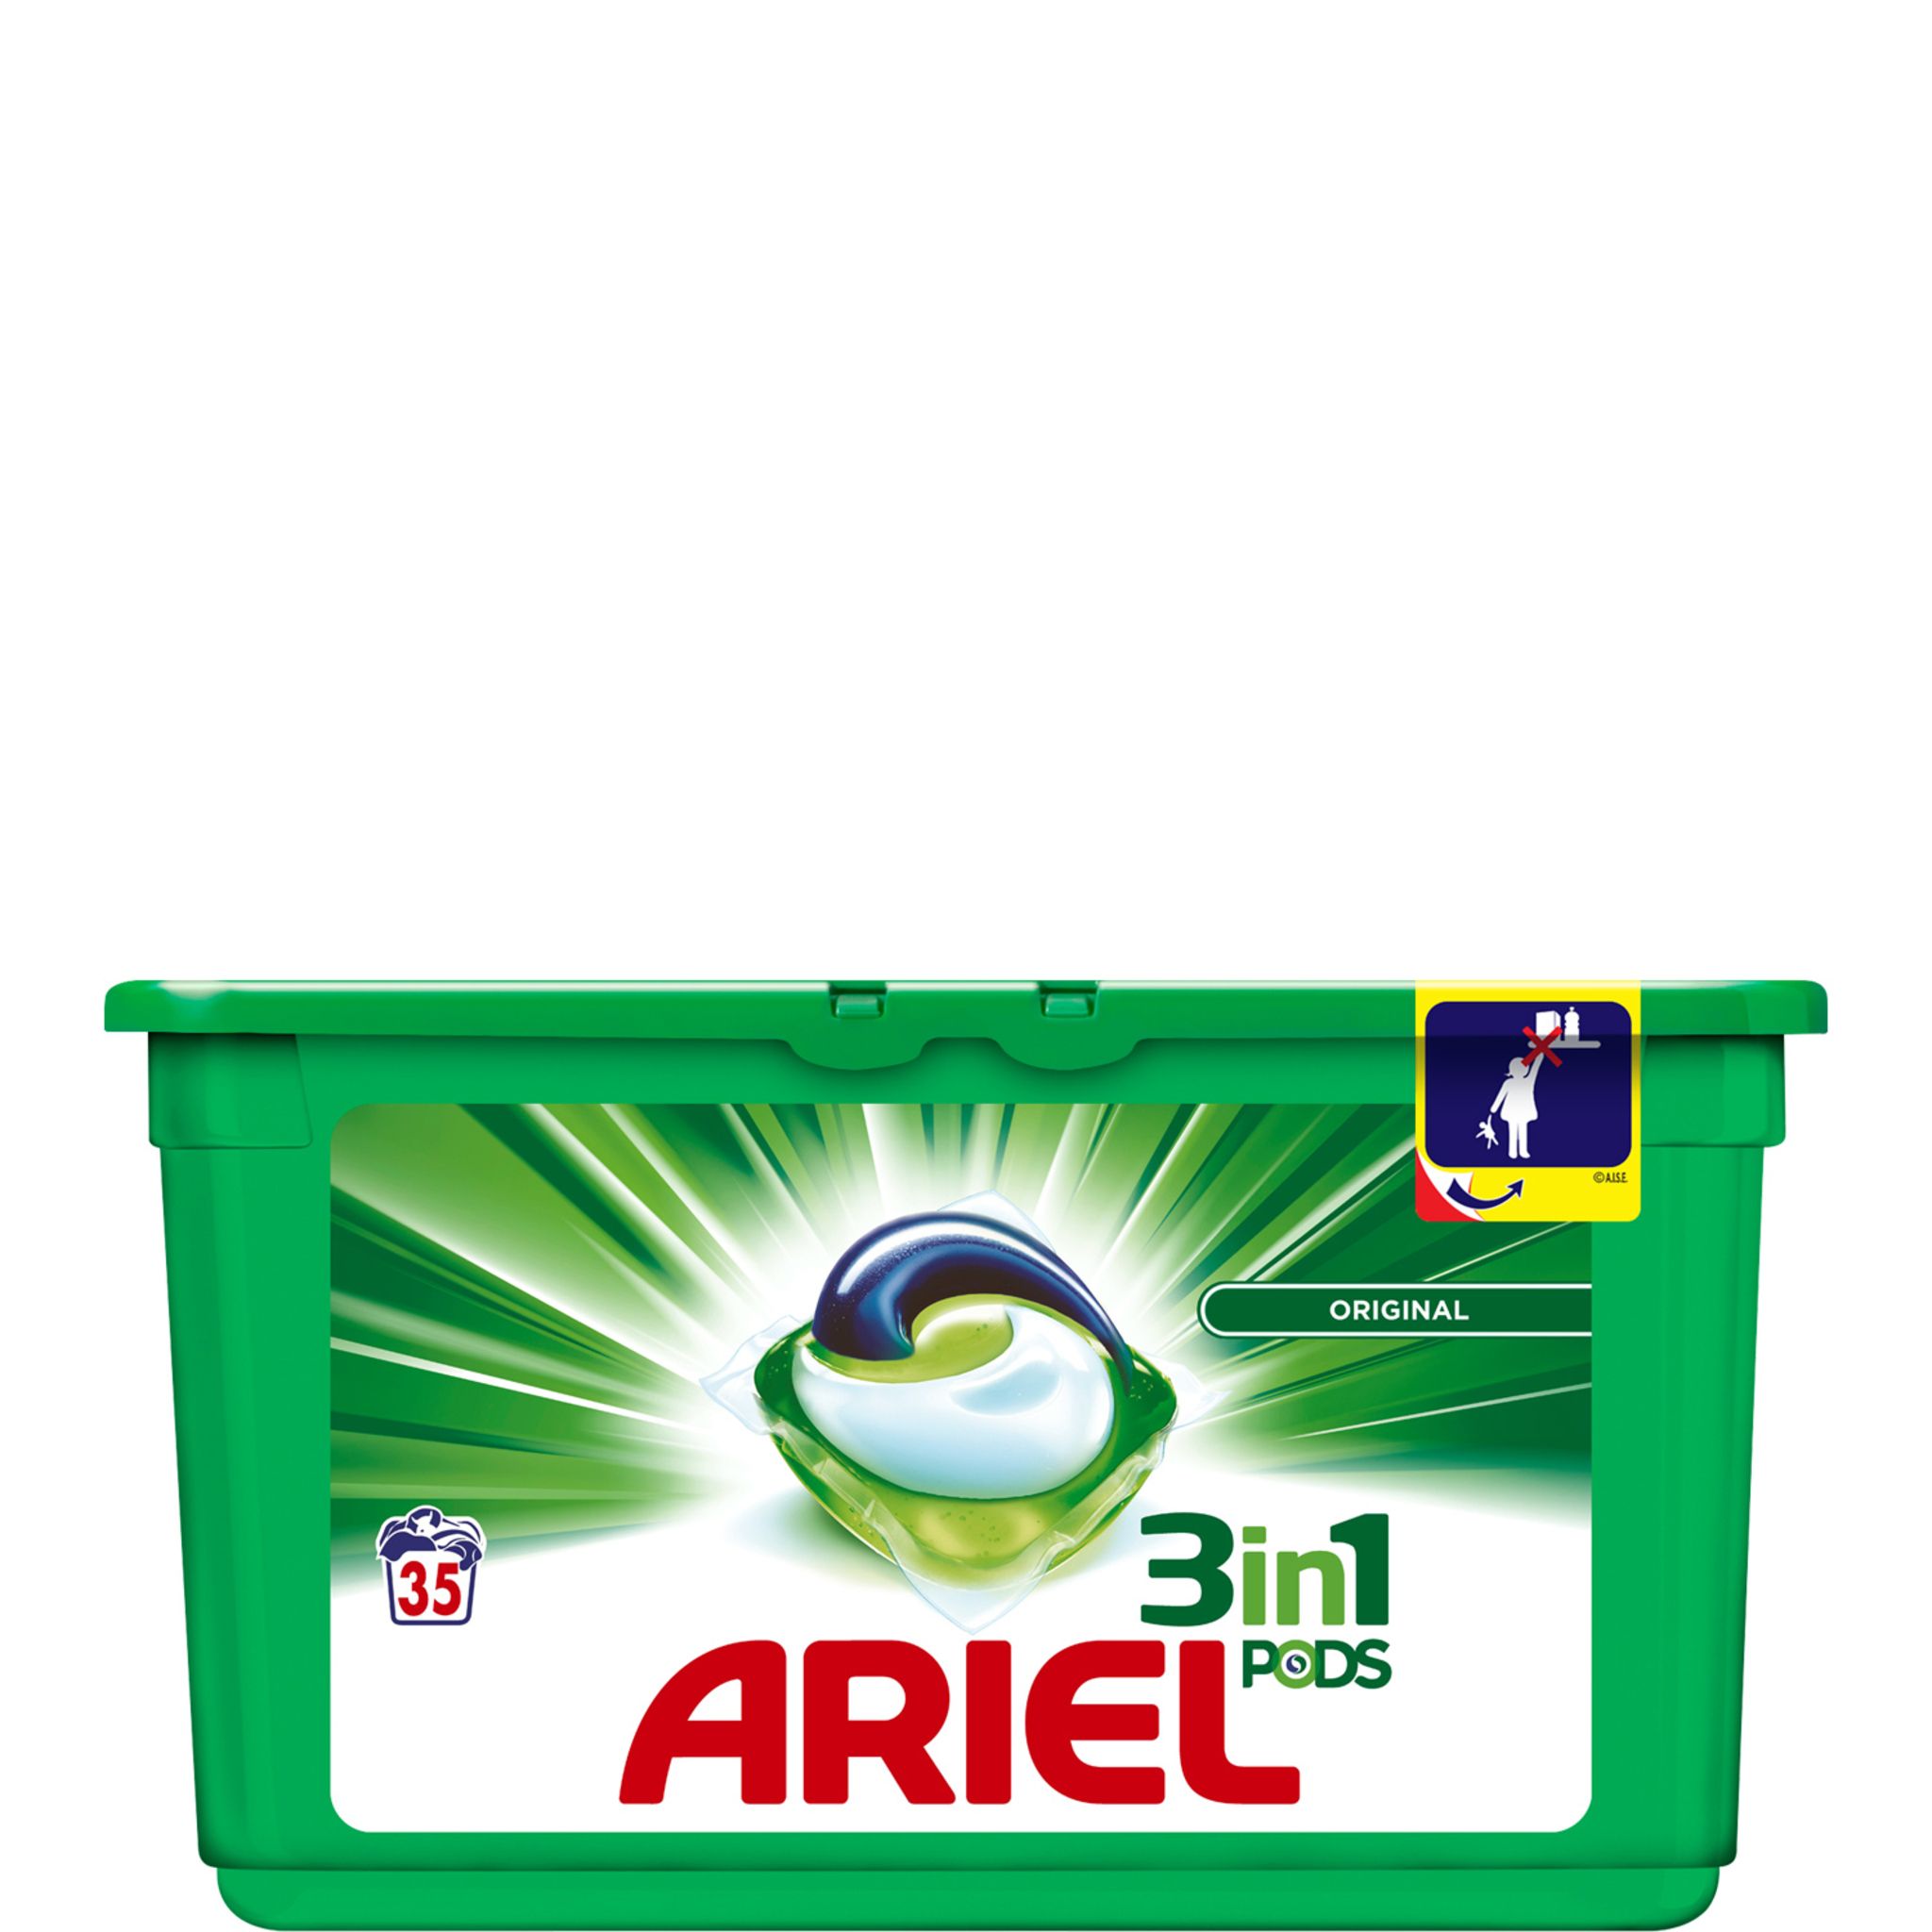 ARIEL Ariel pods lessive original écodose x35 -0,994l pas cher 